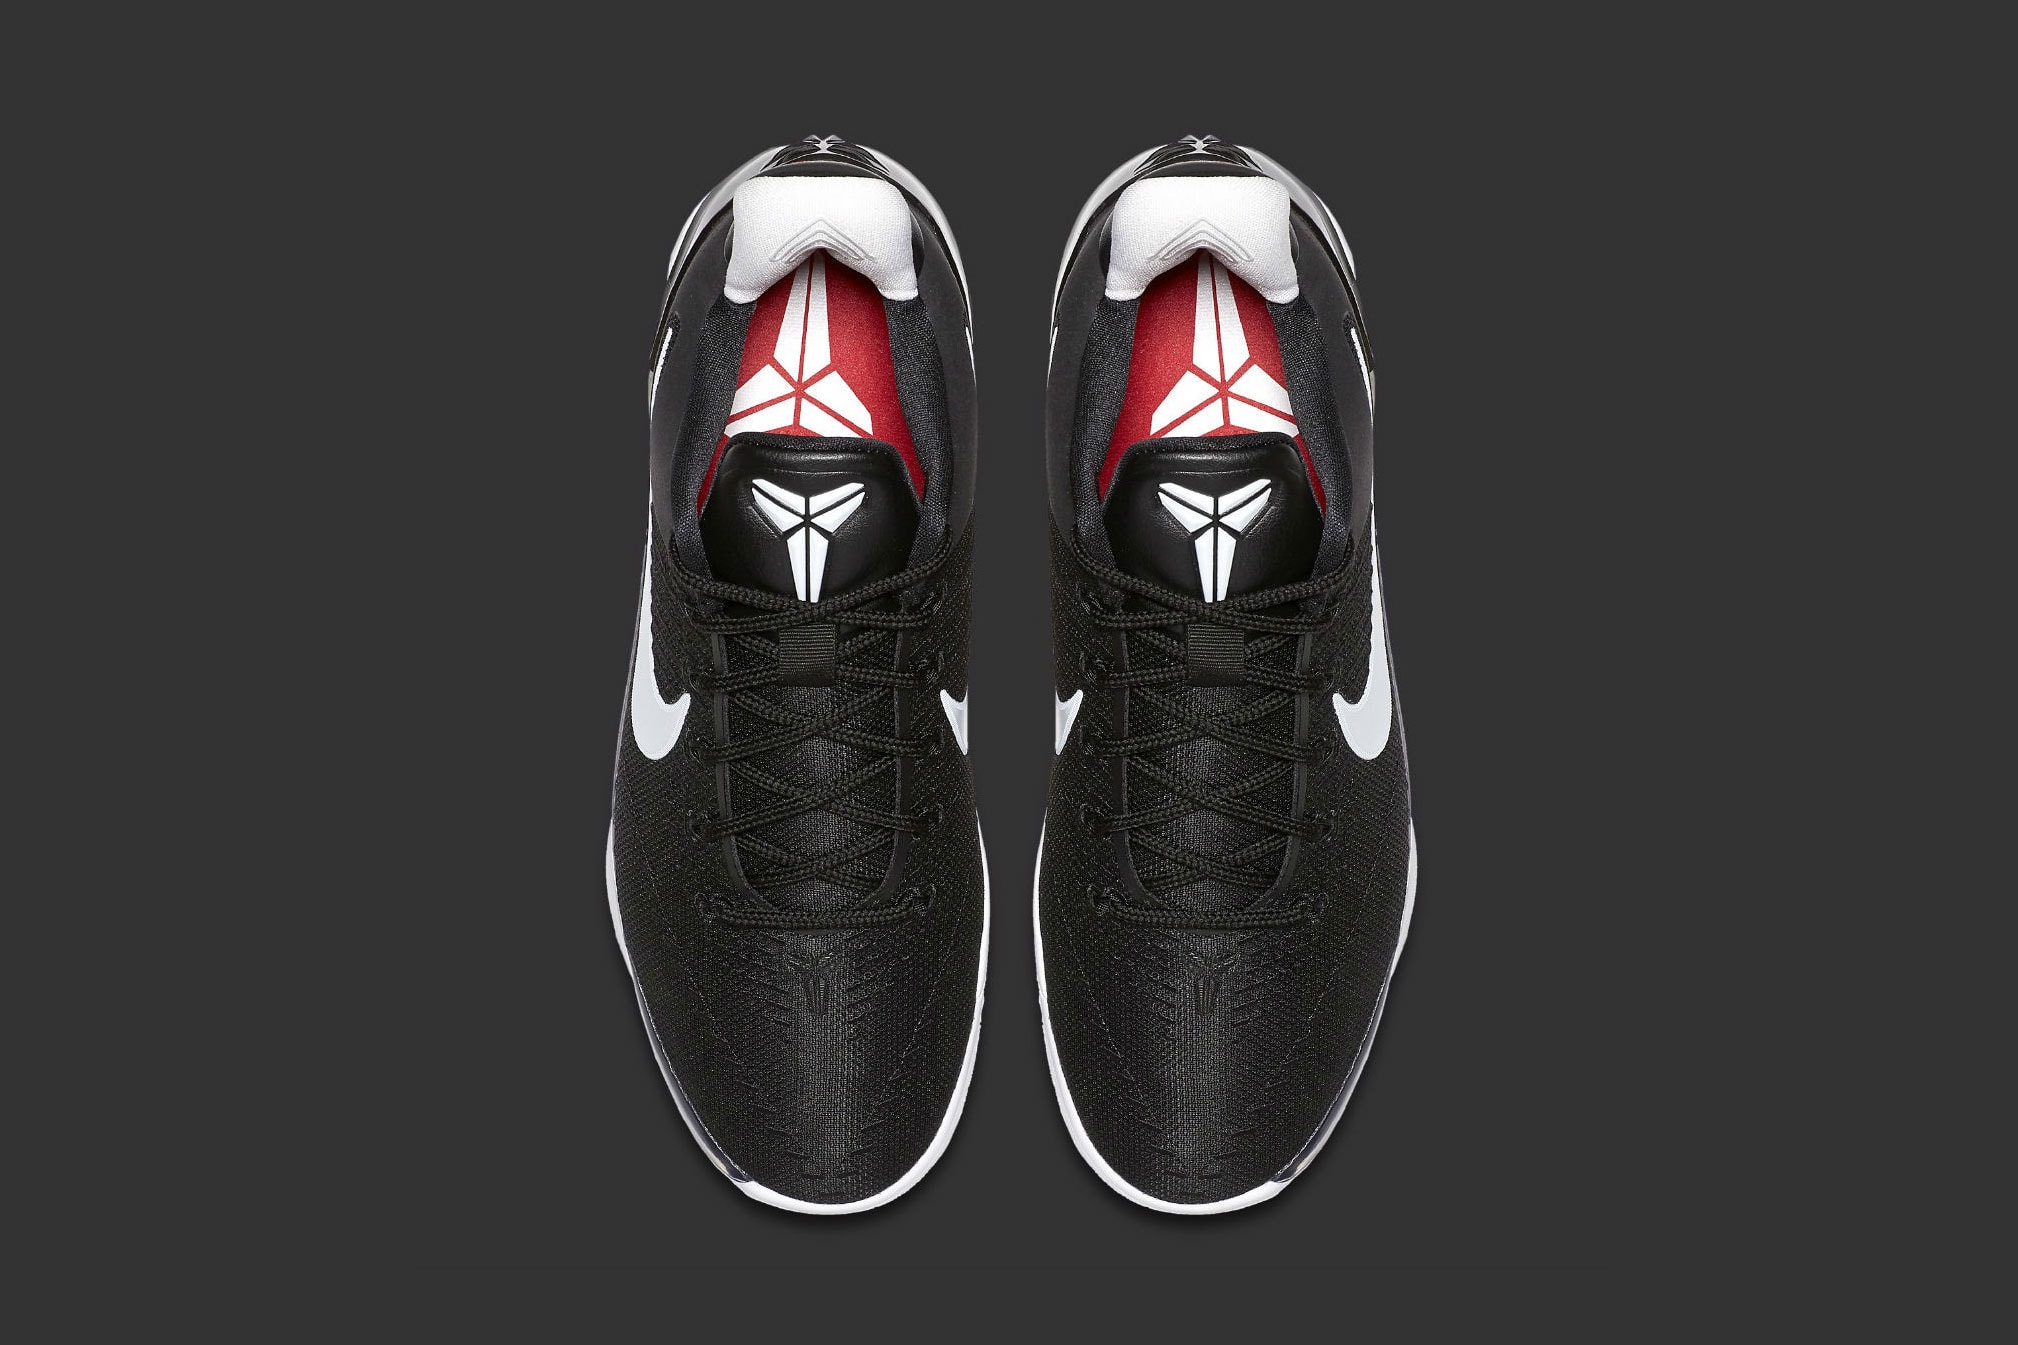 Nike Kobe Bryant A.D. Black and White Basketball Sneaker